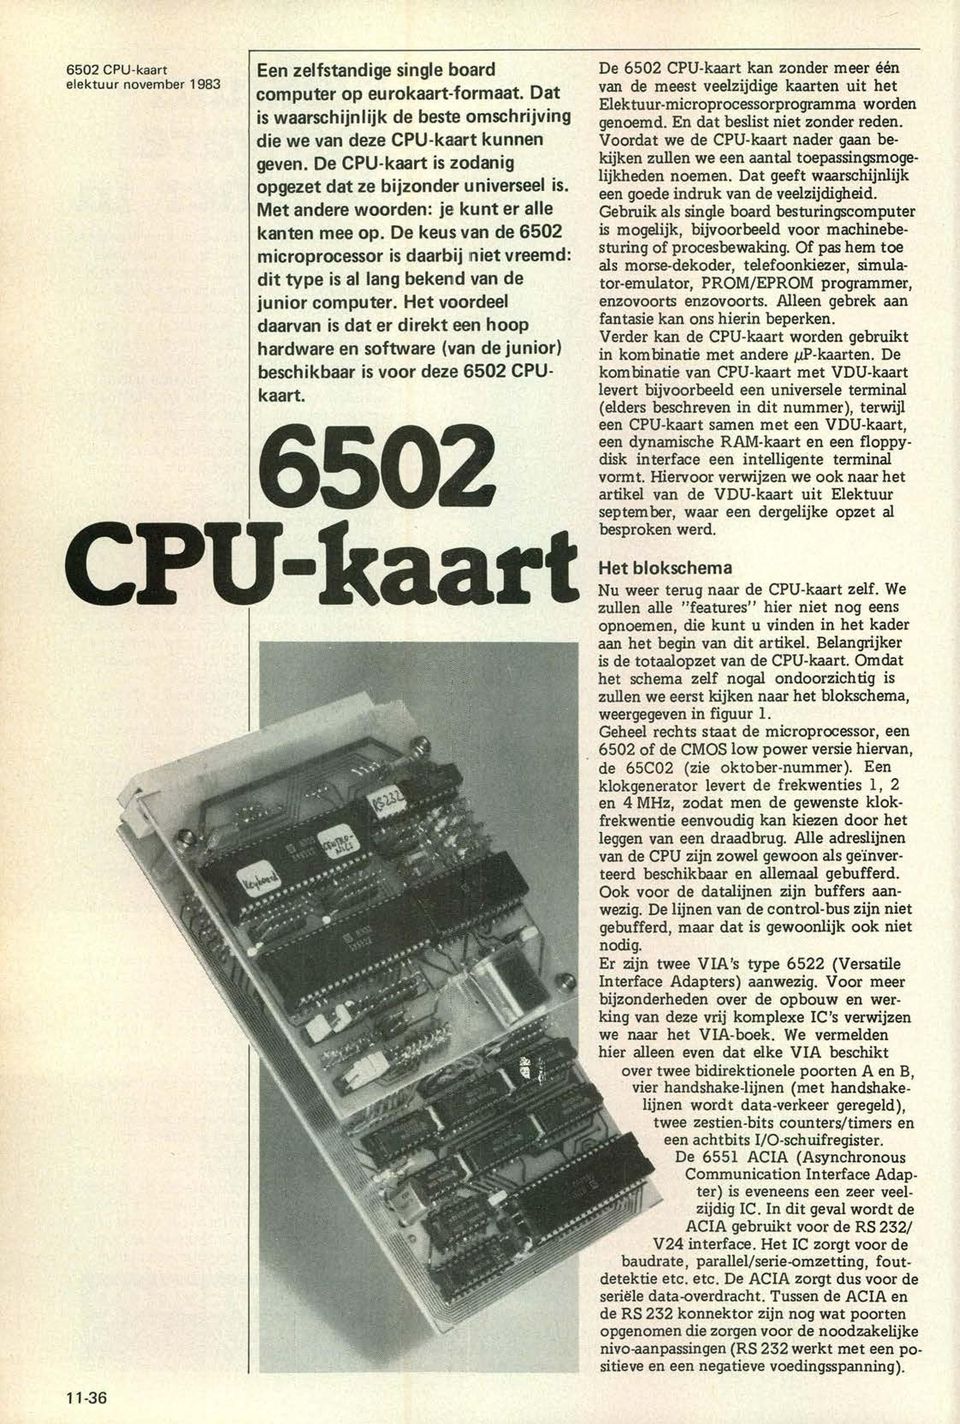 De keus van de 652 microprocessor is daarbij niet vreemd: dit type is al lang bekend van de junior computer.